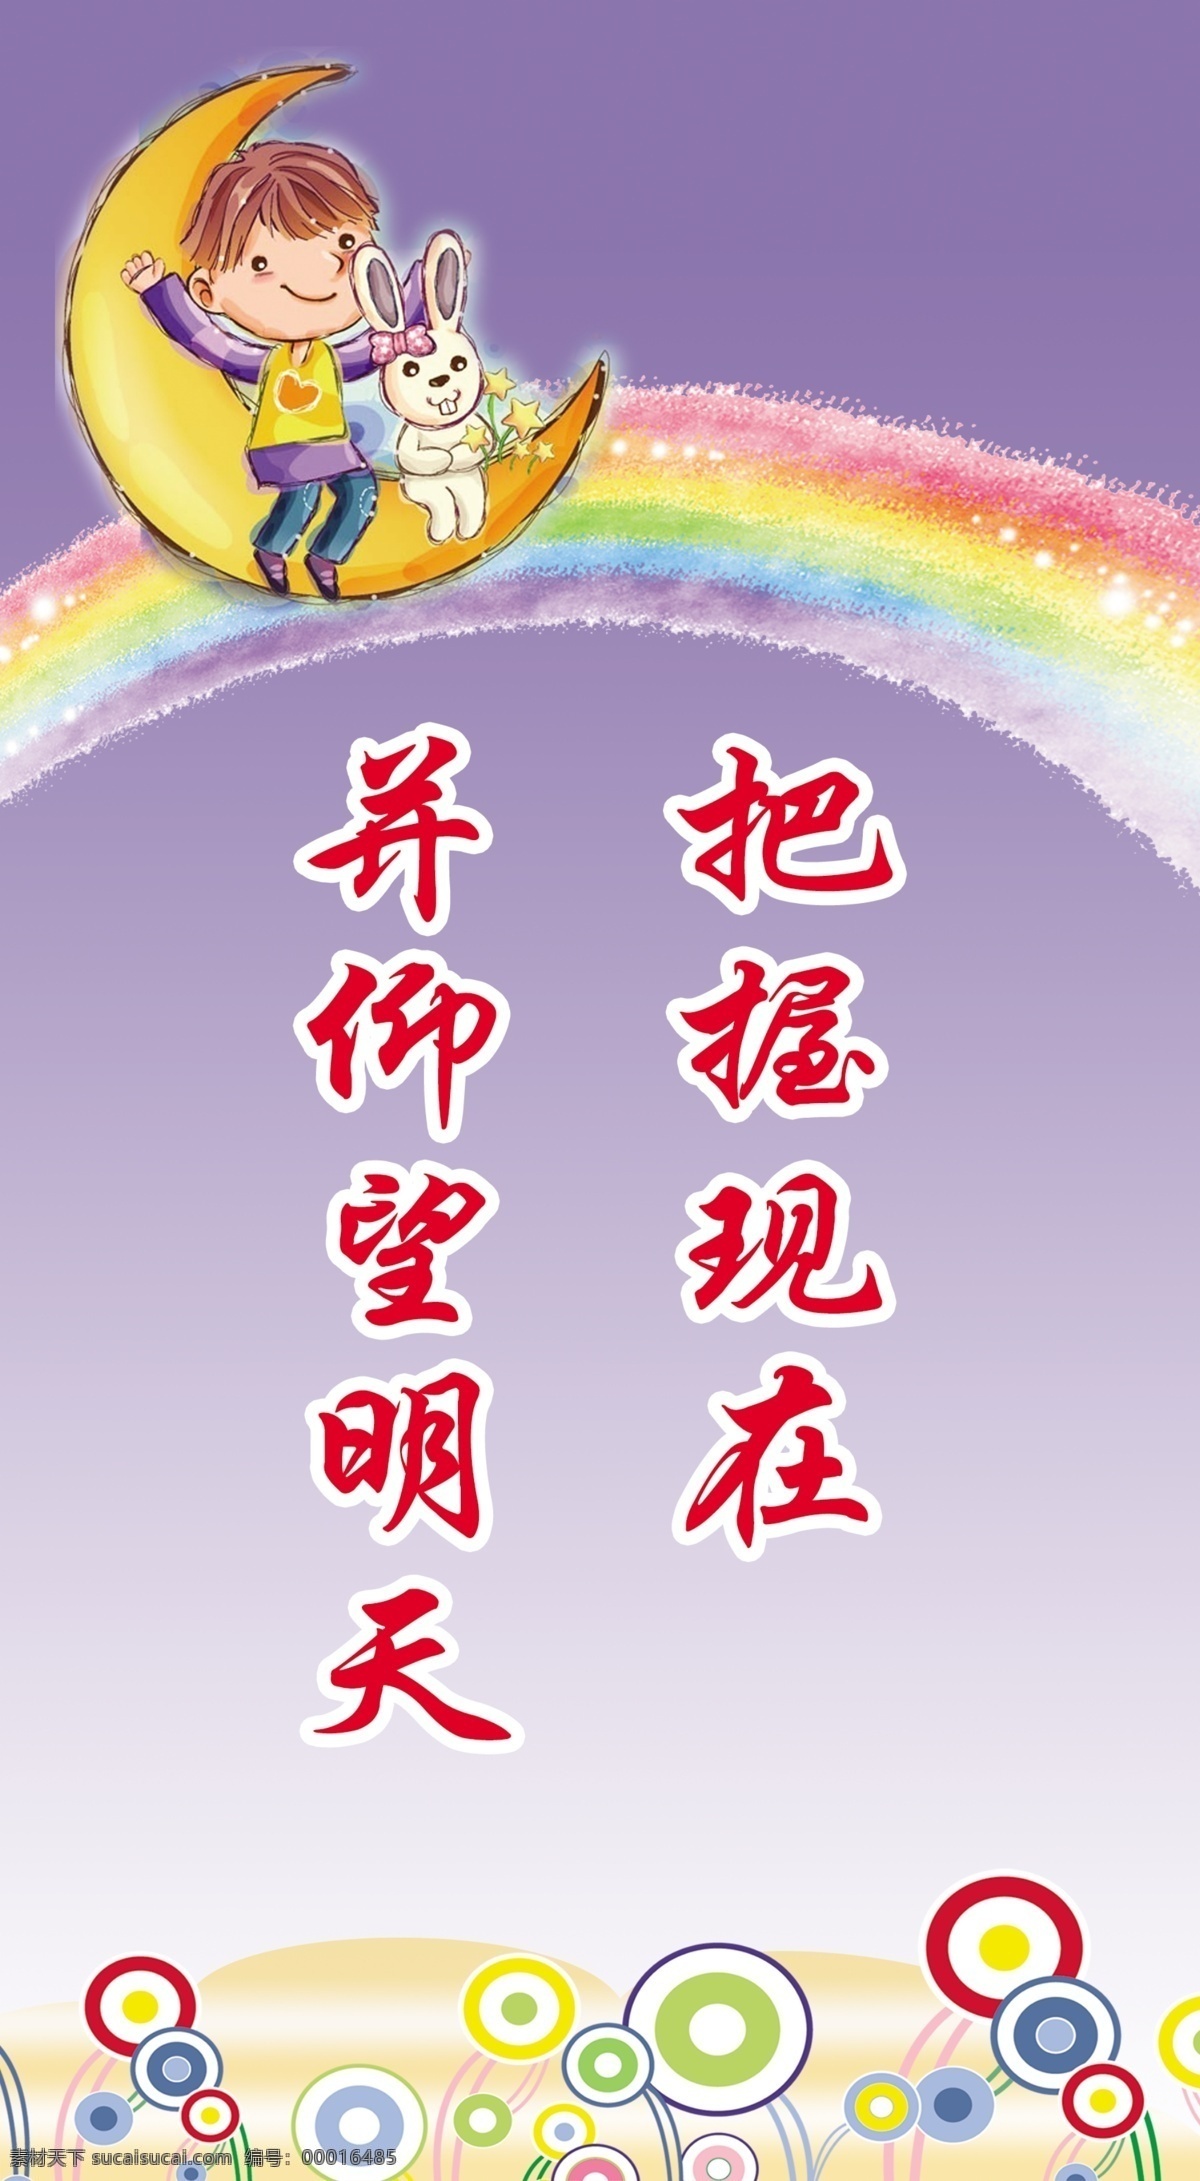 彩虹 儿童 广告设计模板 卡通 励志 励志标语 标语 模板下载 源文件 把握 月亮上的孩子 展板模板 其他展板设计